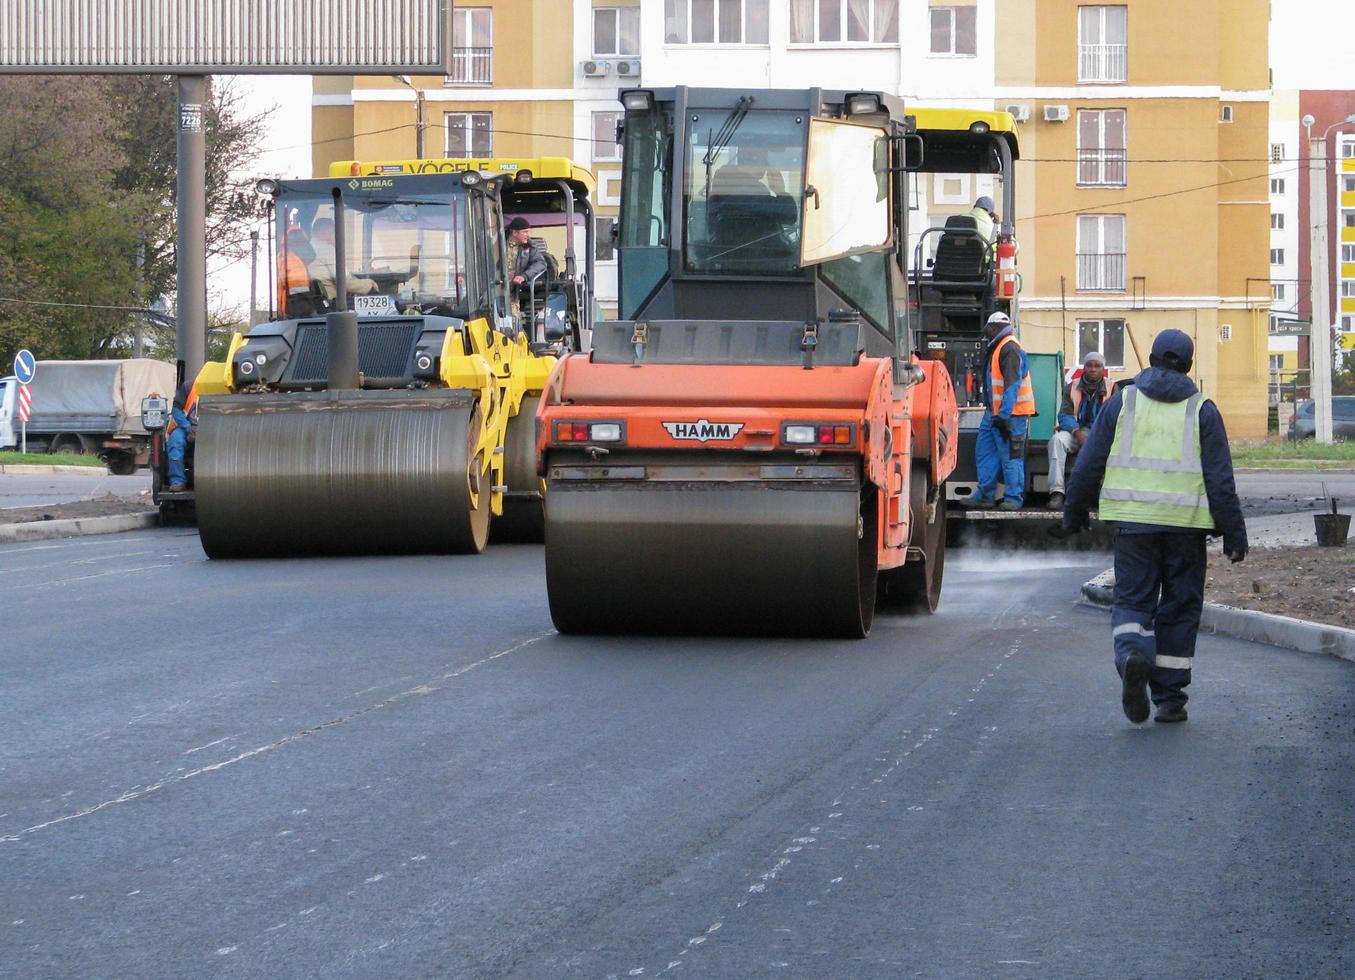 ucraina, kharkiv, 27 ottobre 2020. vista ravvicinata sui lavoratori e sulle macchine asfaltatrici. rullo e addetti all'asfaltatura e riparazione di strade cittadine. foto di alta qualità